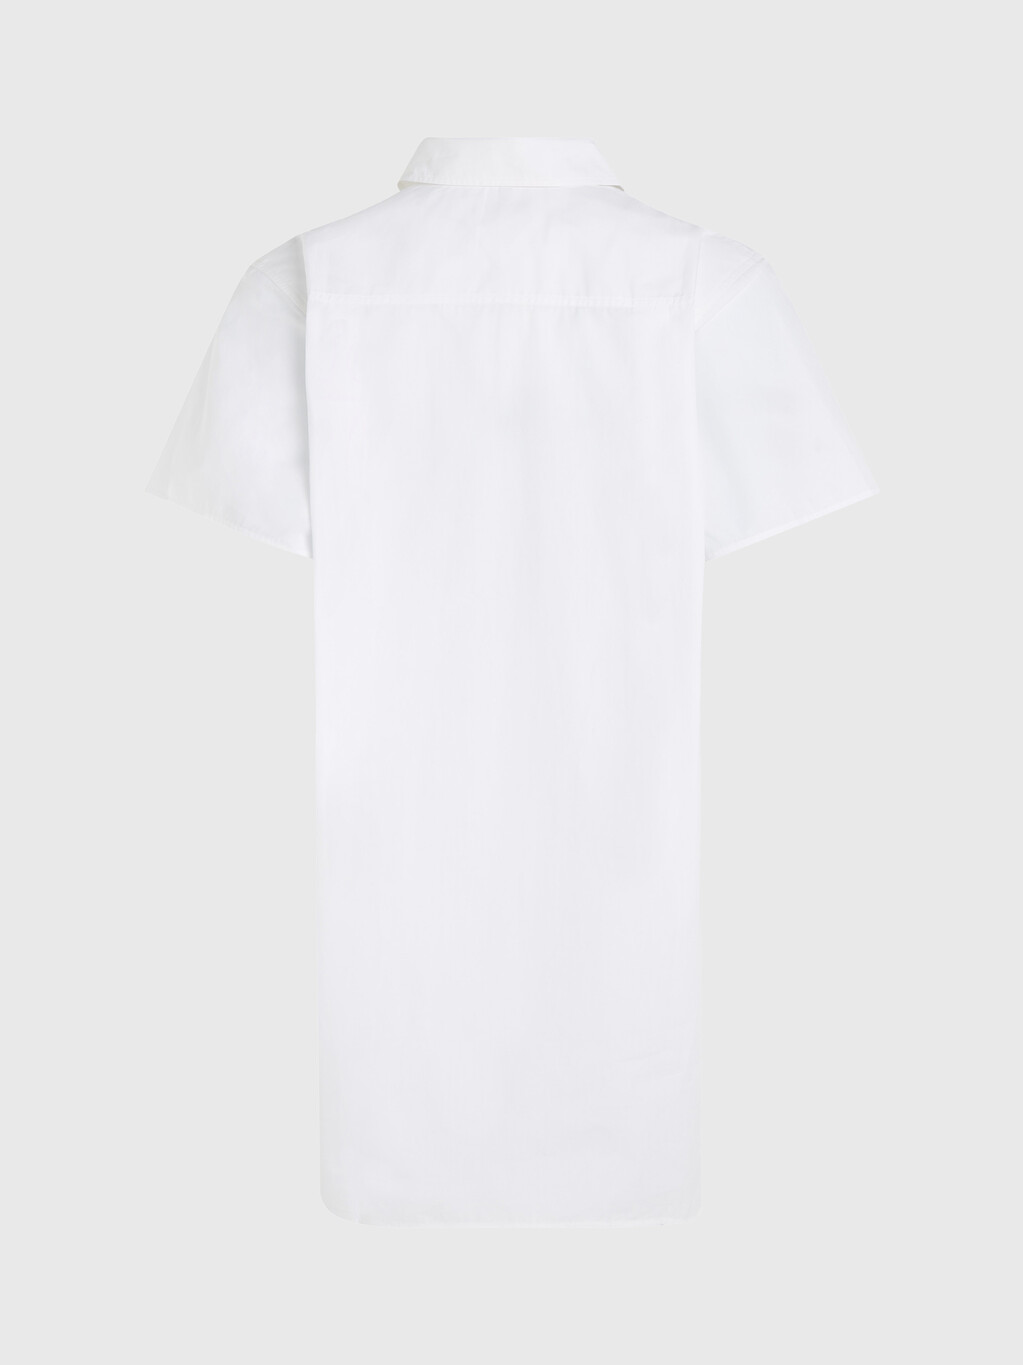 復古校園風襯衫洋裝, Desert Sky/White, hi-res